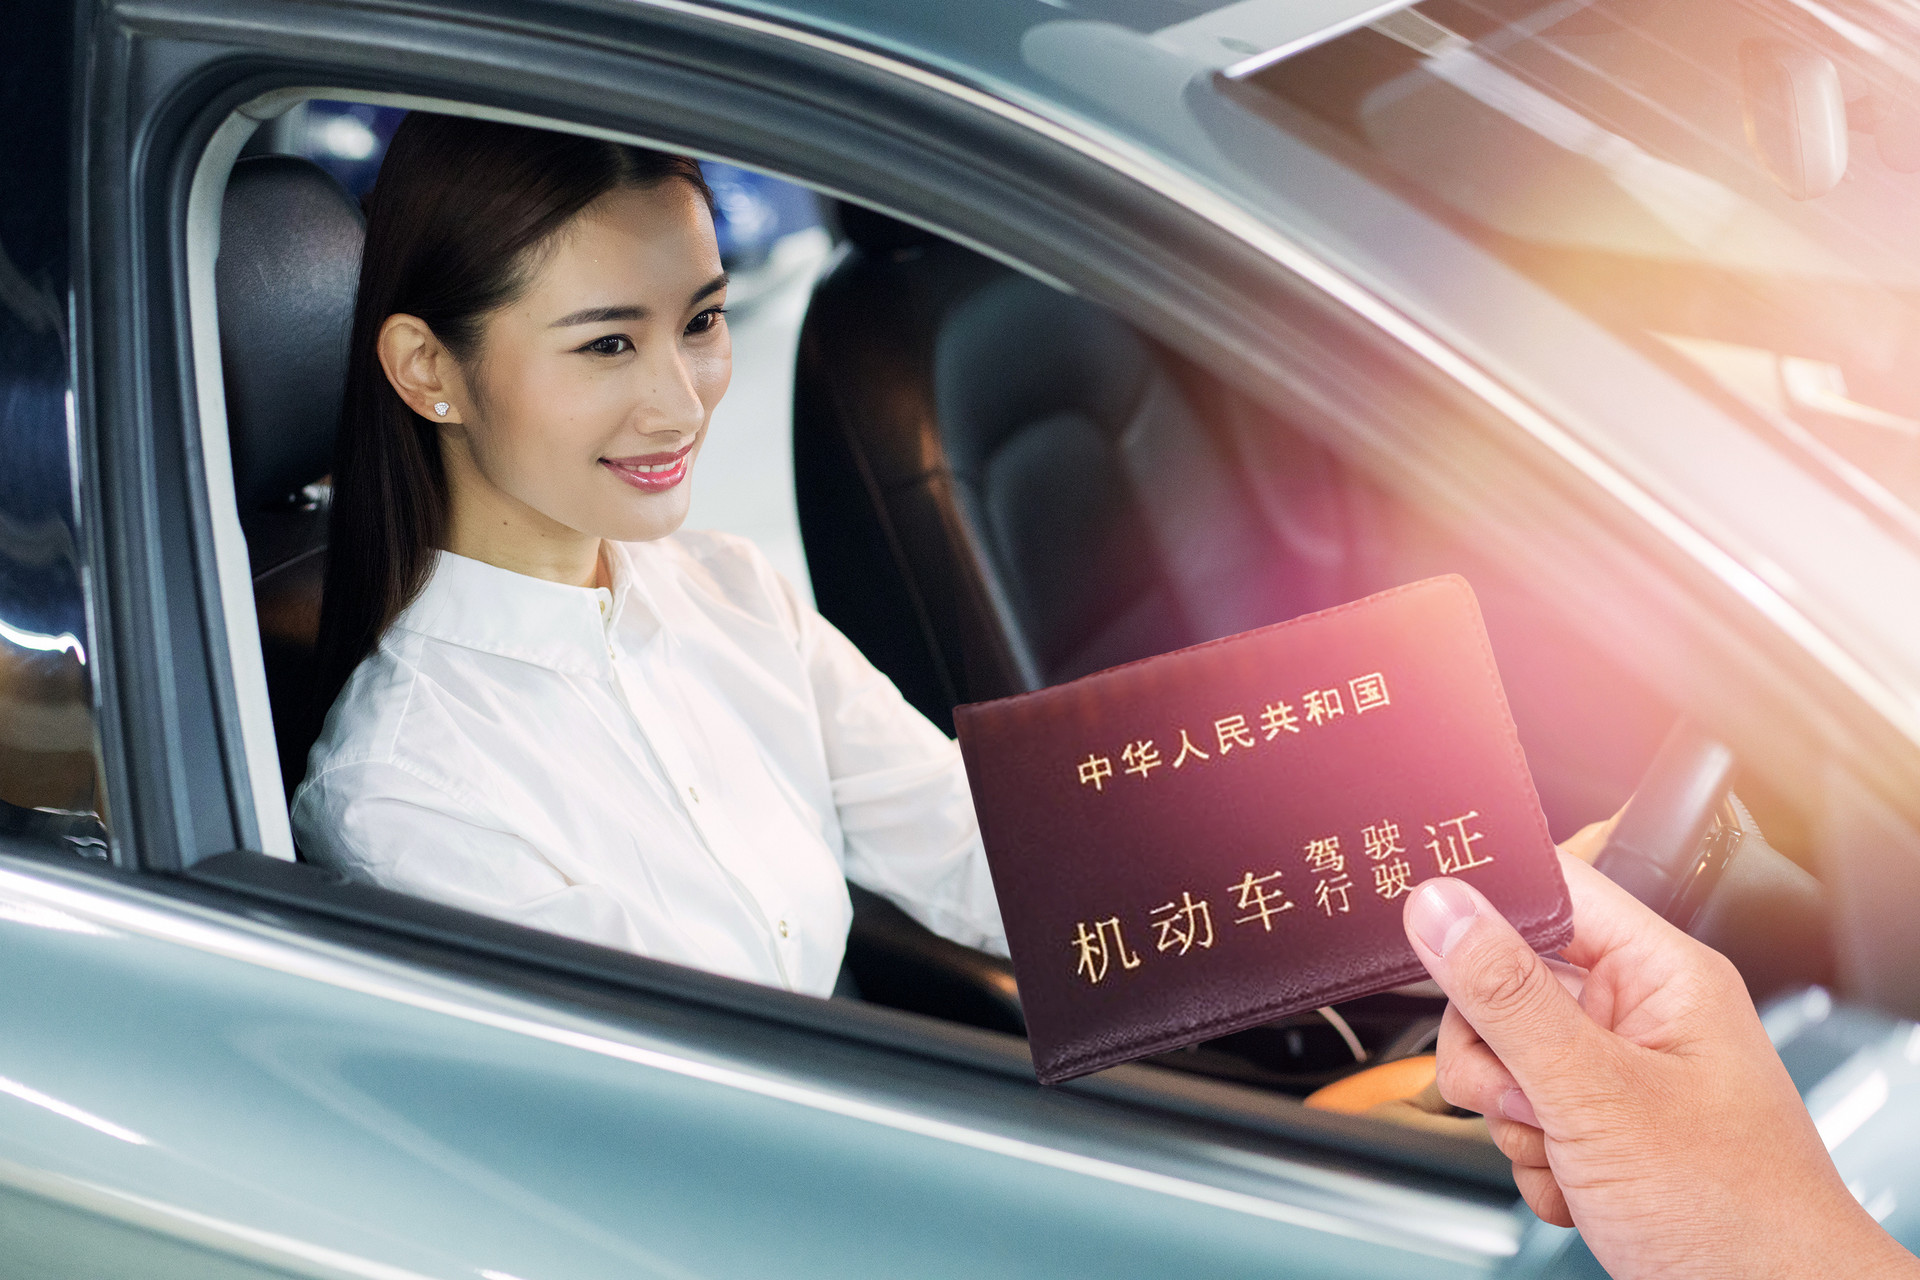 2019双语版新韩国驾照展示，韩国驾照增英文标记_搜狐汽车_搜狐网